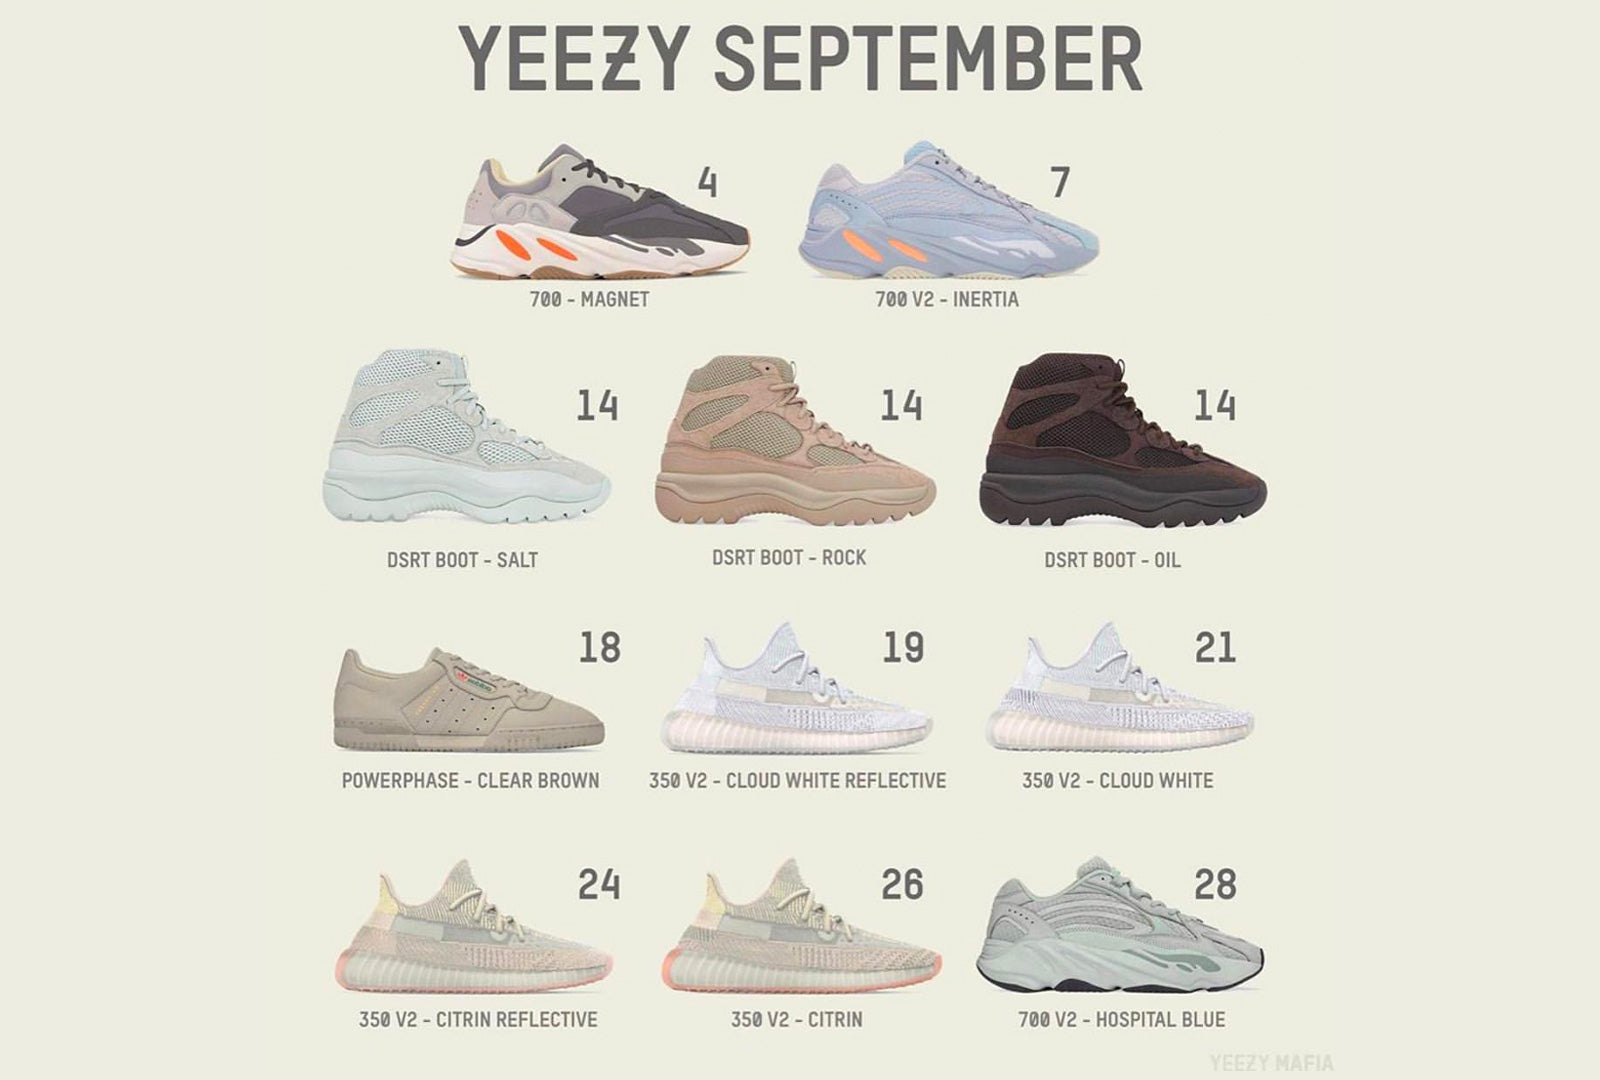 Yeezy Release Calendar September - Sneakers